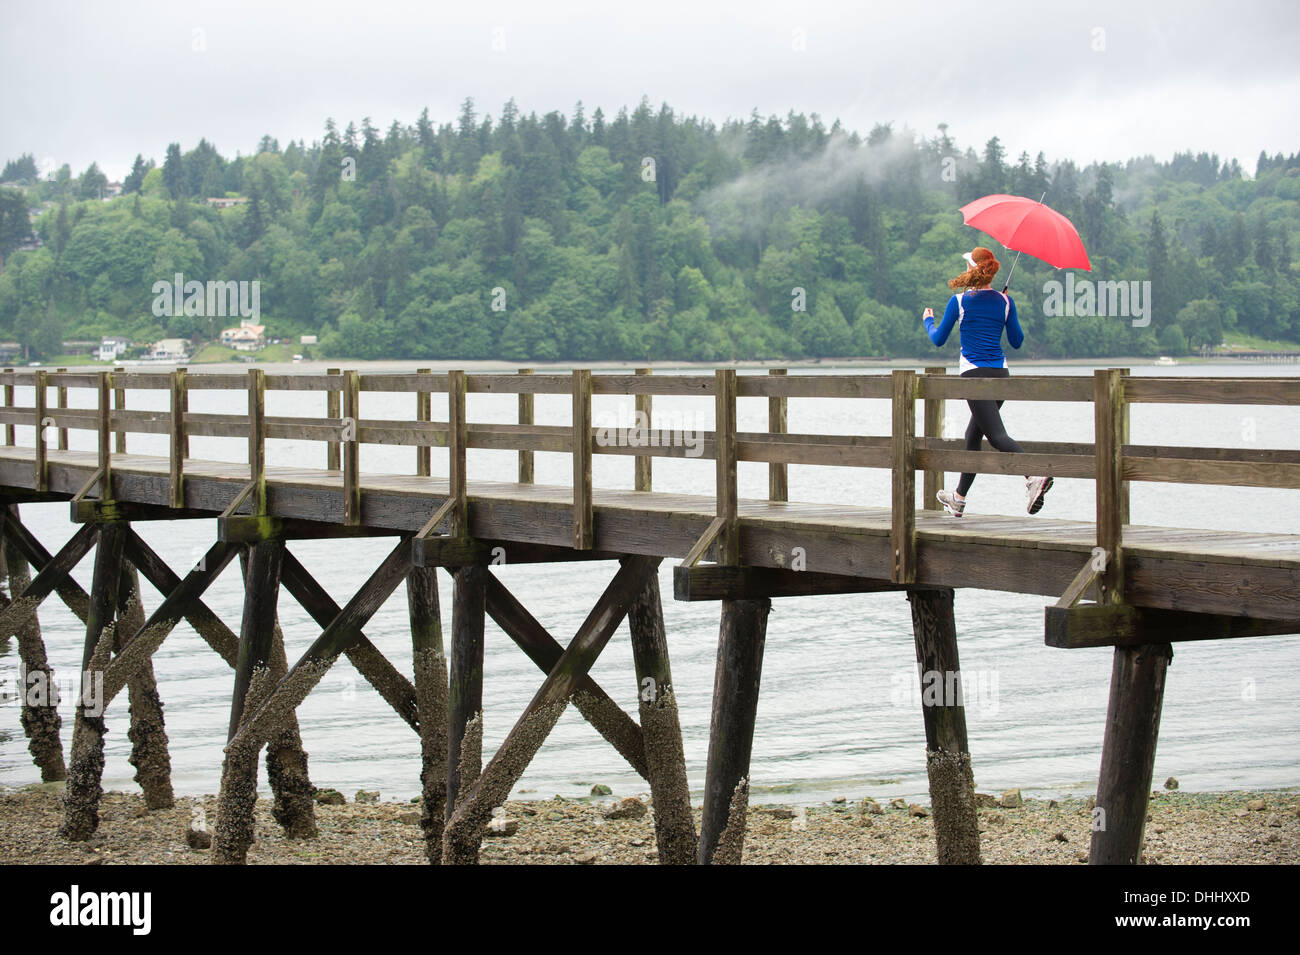 Ragazza adolescente in esecuzione con ombrello sul molo, Bainbridge Island, Washington, Stati Uniti d'America Foto Stock